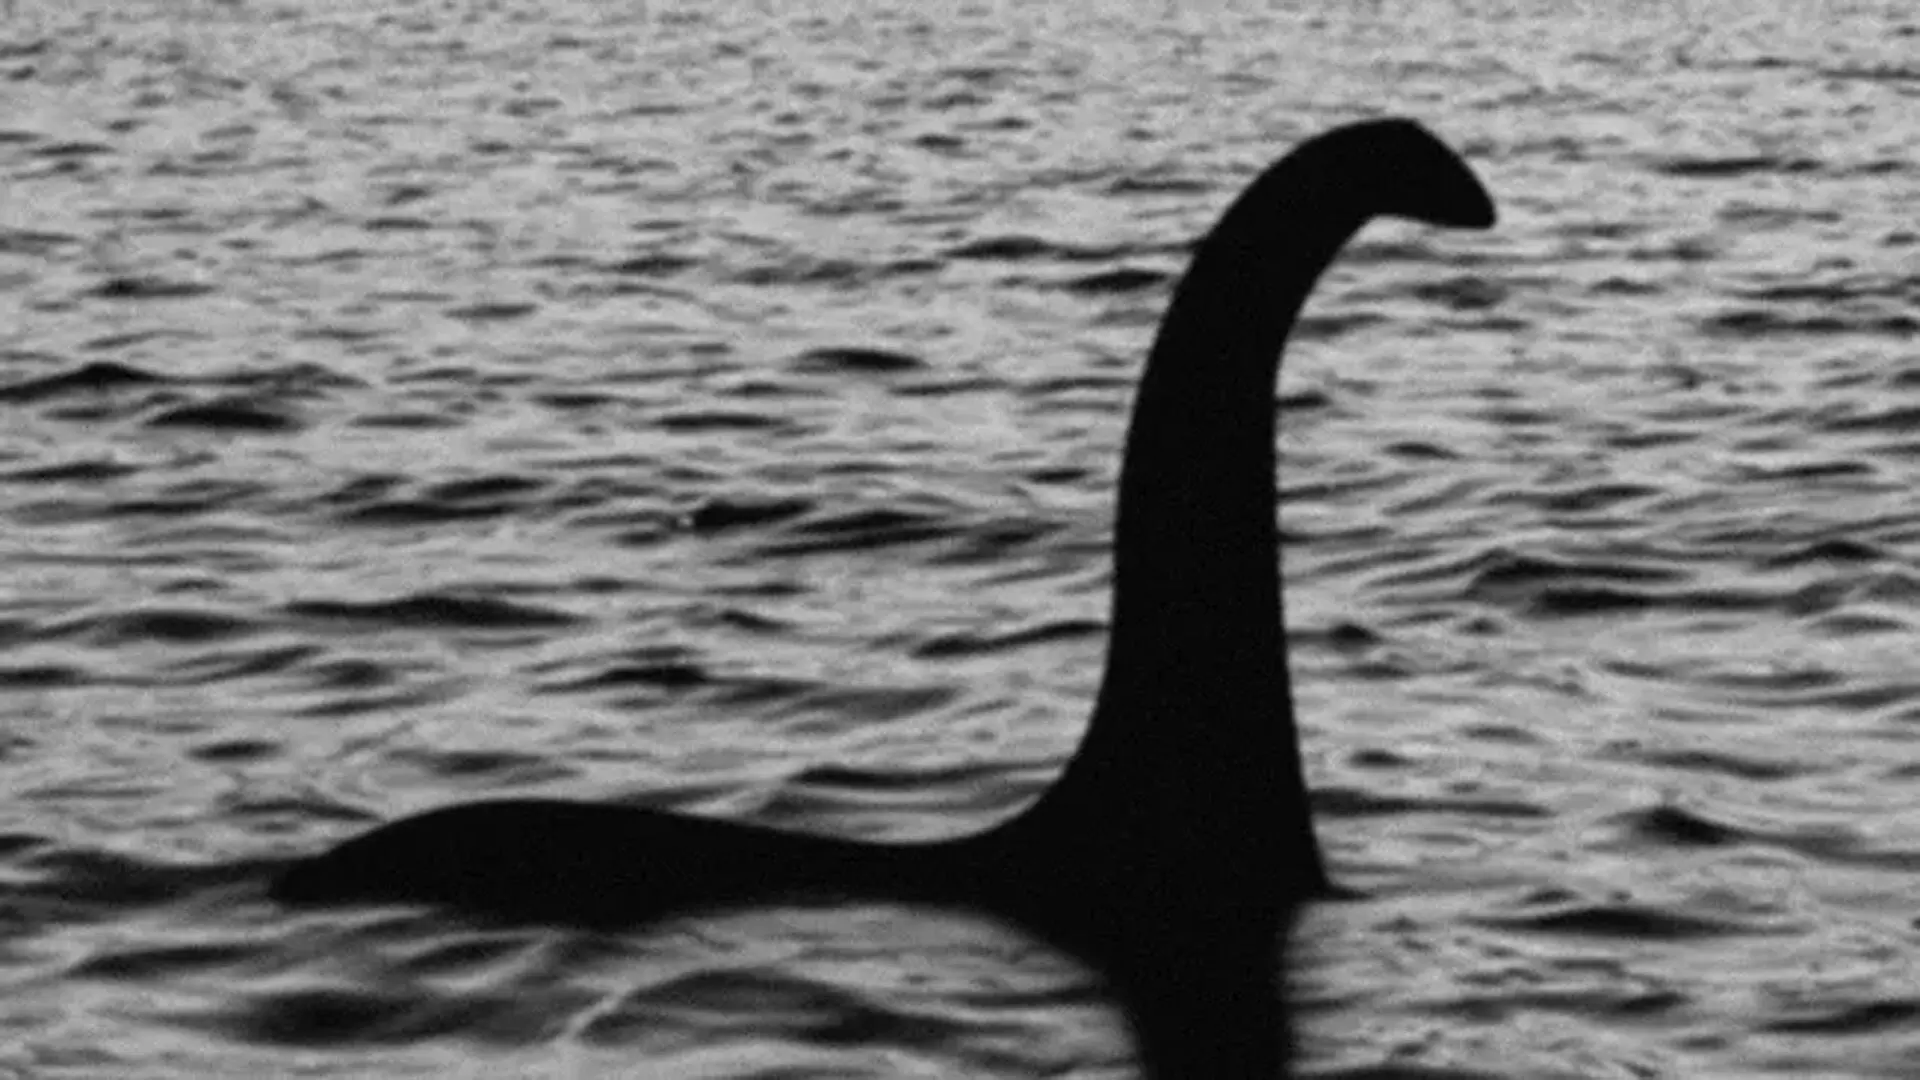 Loch Ness Monster, कुछ सेकंड में अपनी गर्दन को अपने शरीर की लंबाई से कर सकता है 30 गुना लंबा